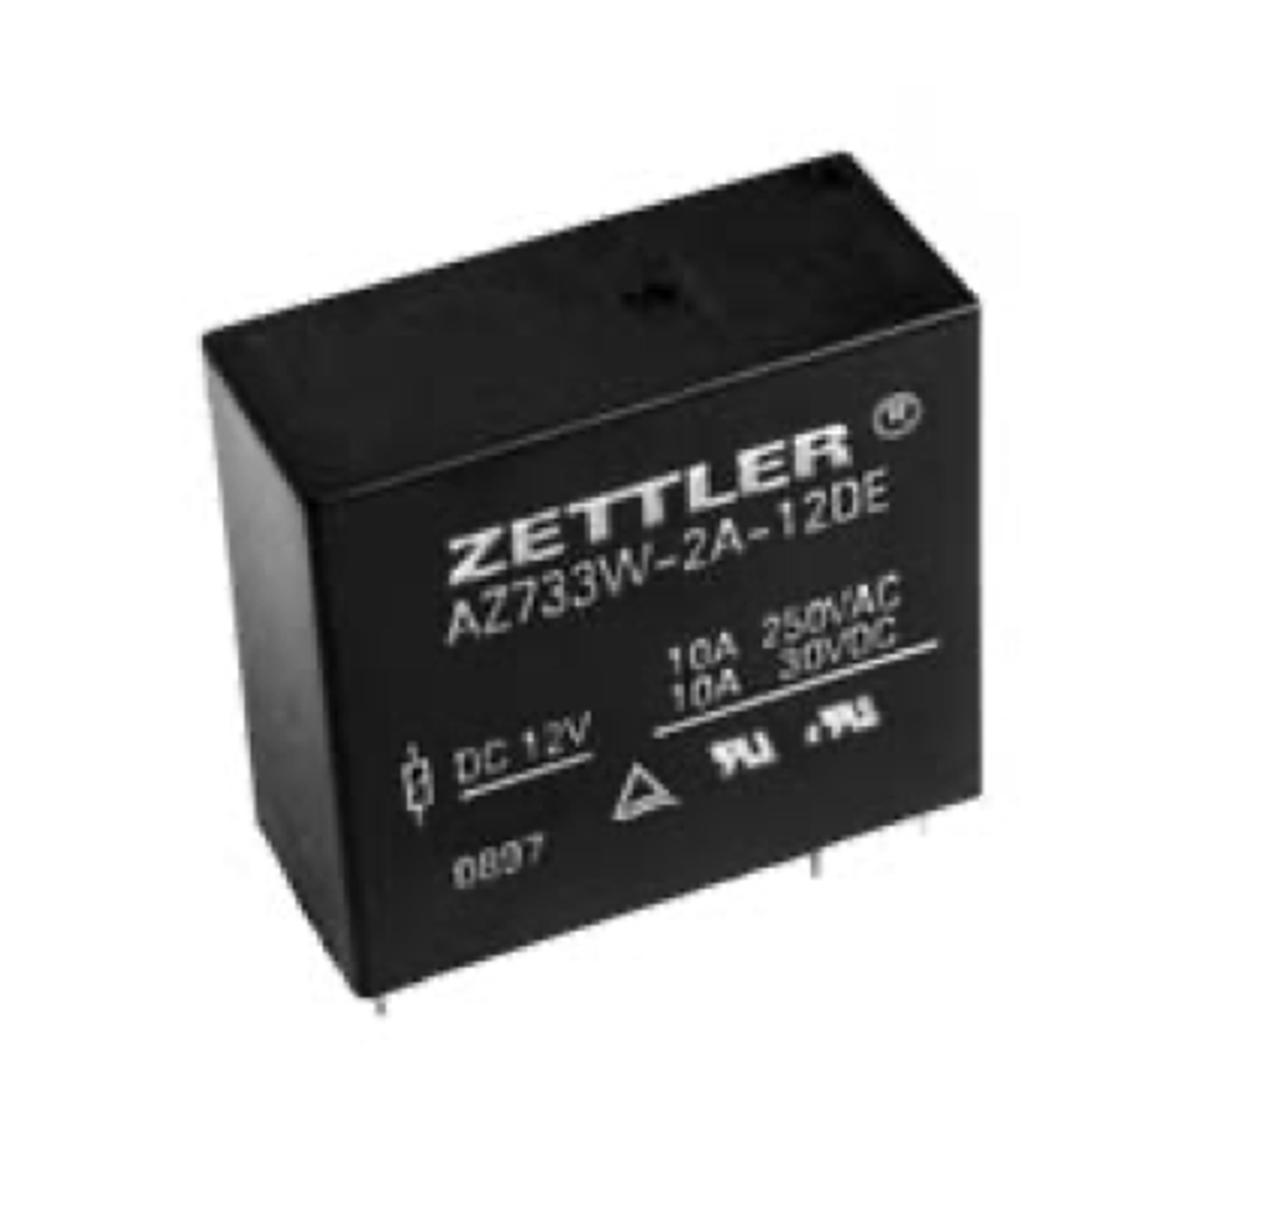 American Zettler AZ733W-2A-3D Power Relay